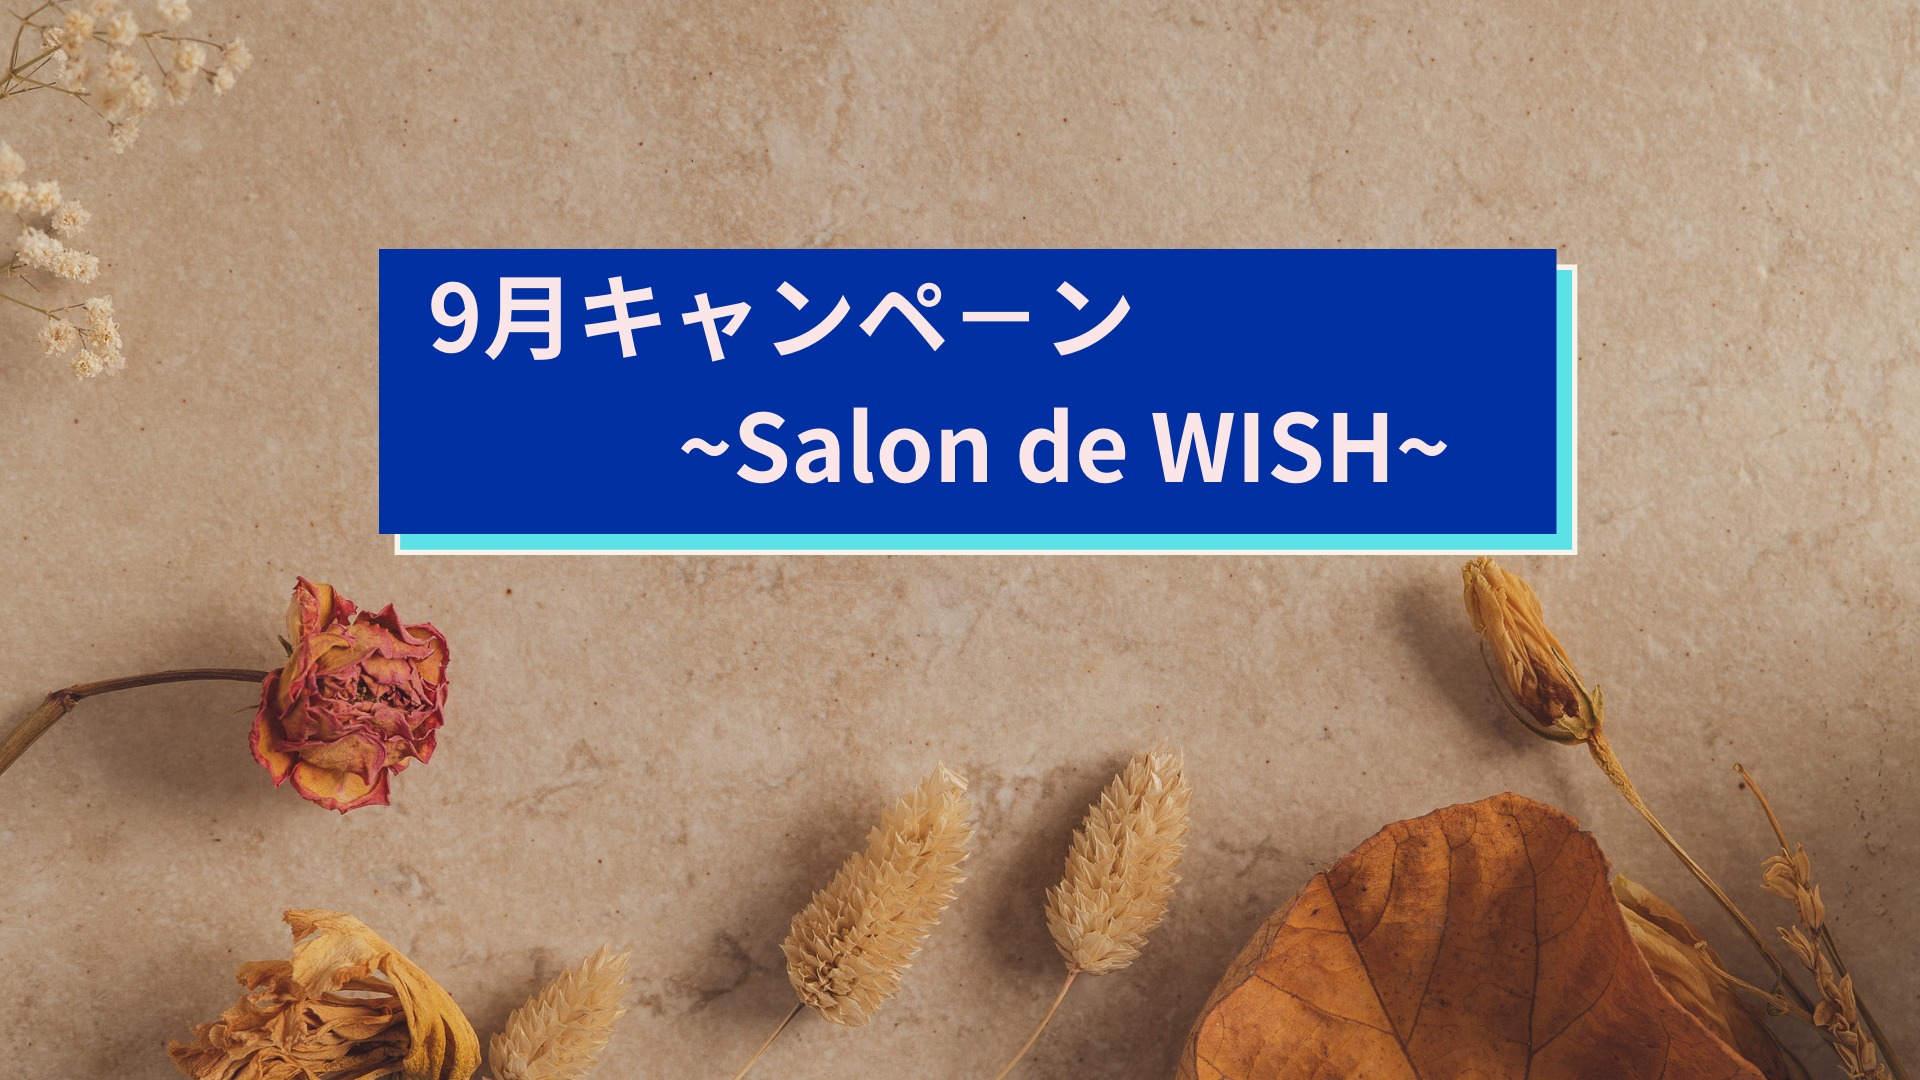 9月キャンペ－ン~Salon de WISH~